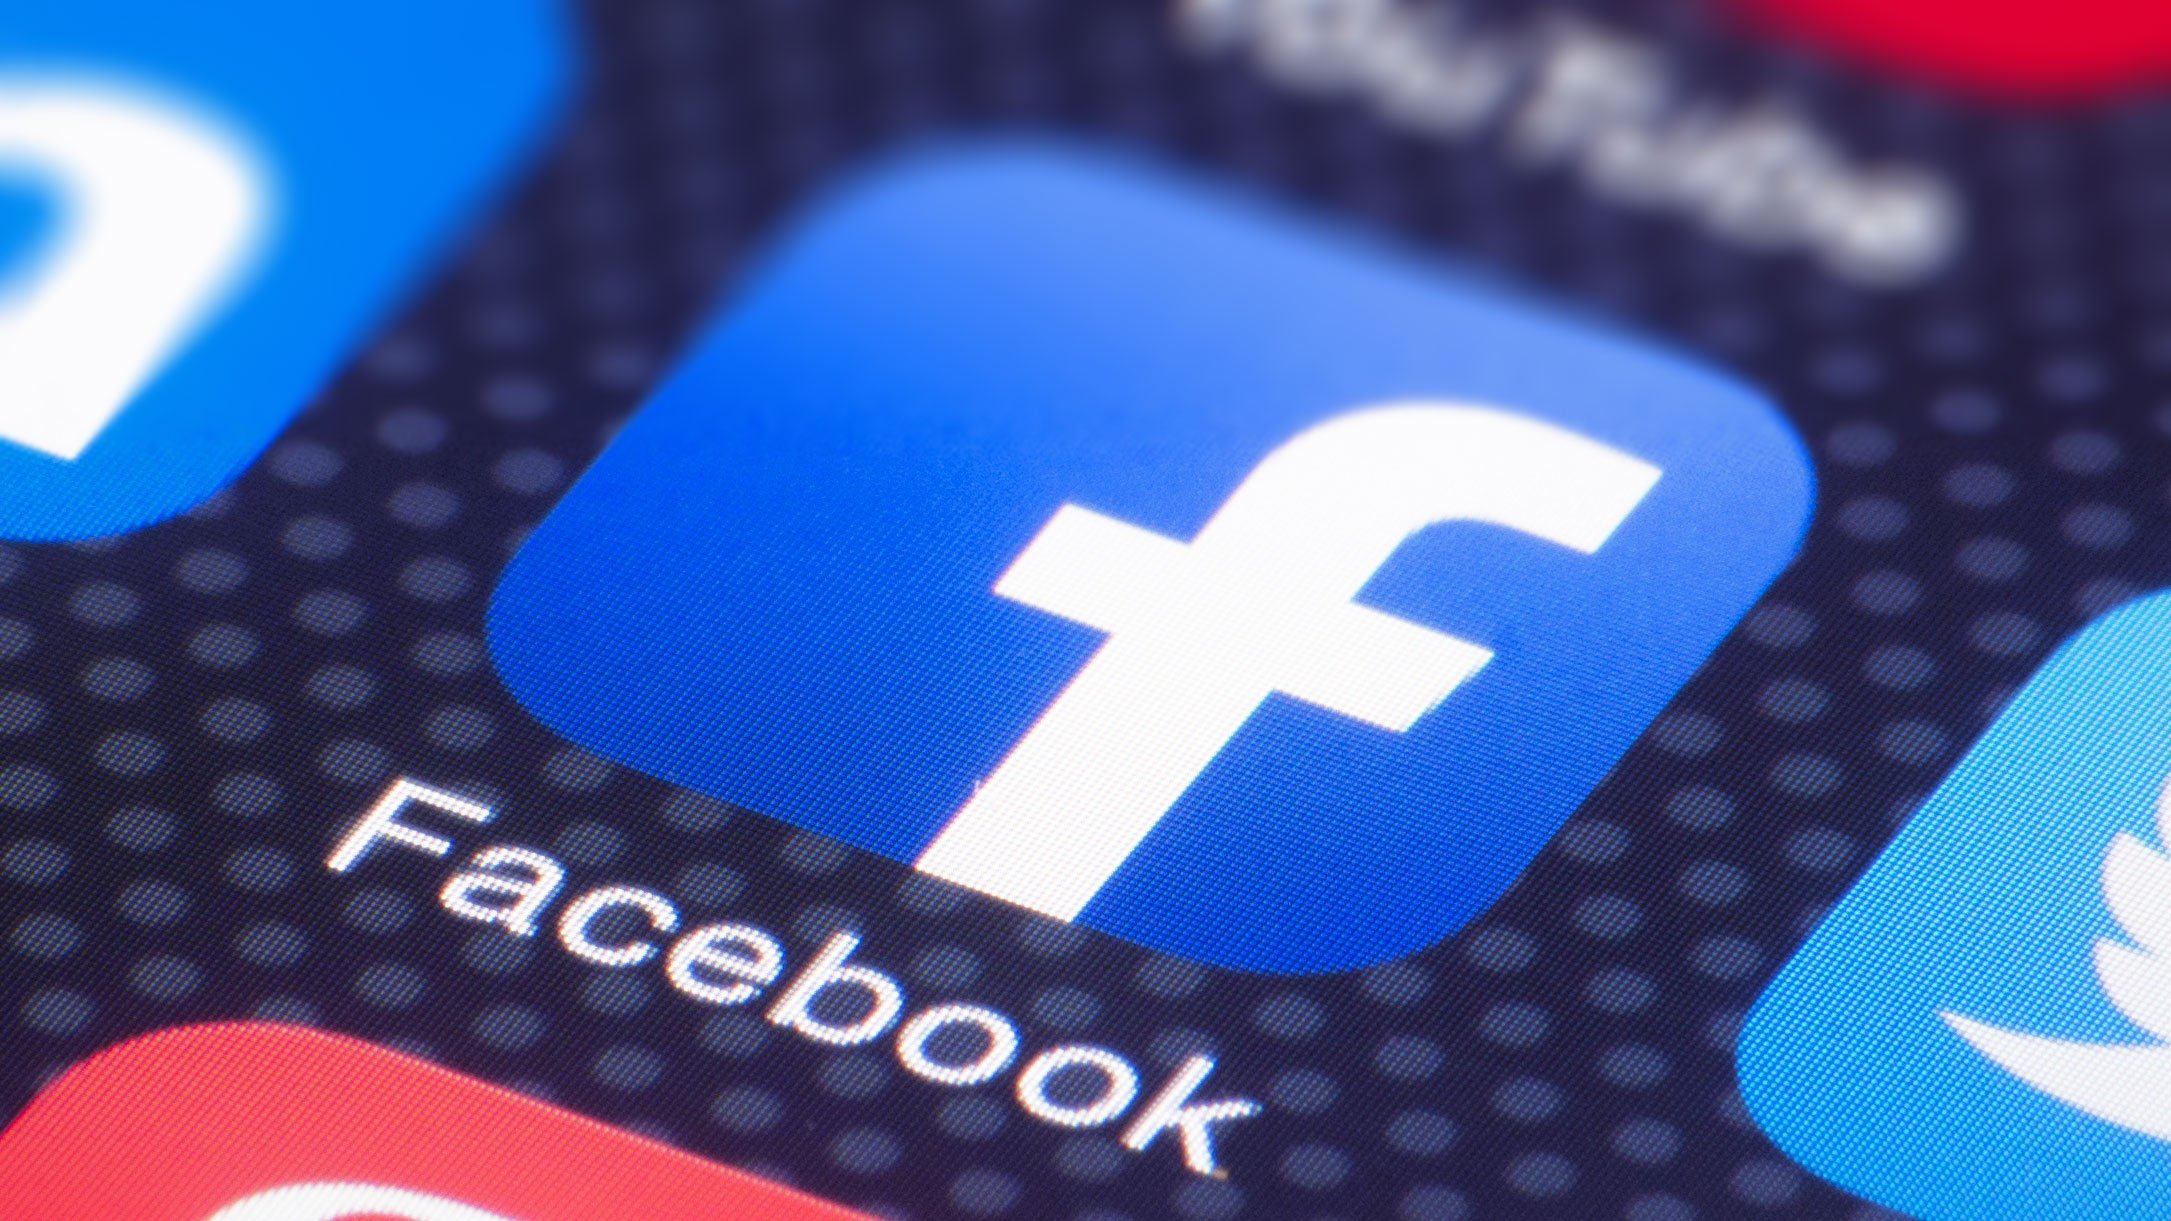  Rusia a limitat accesul la reţeaua de socializare Facebook